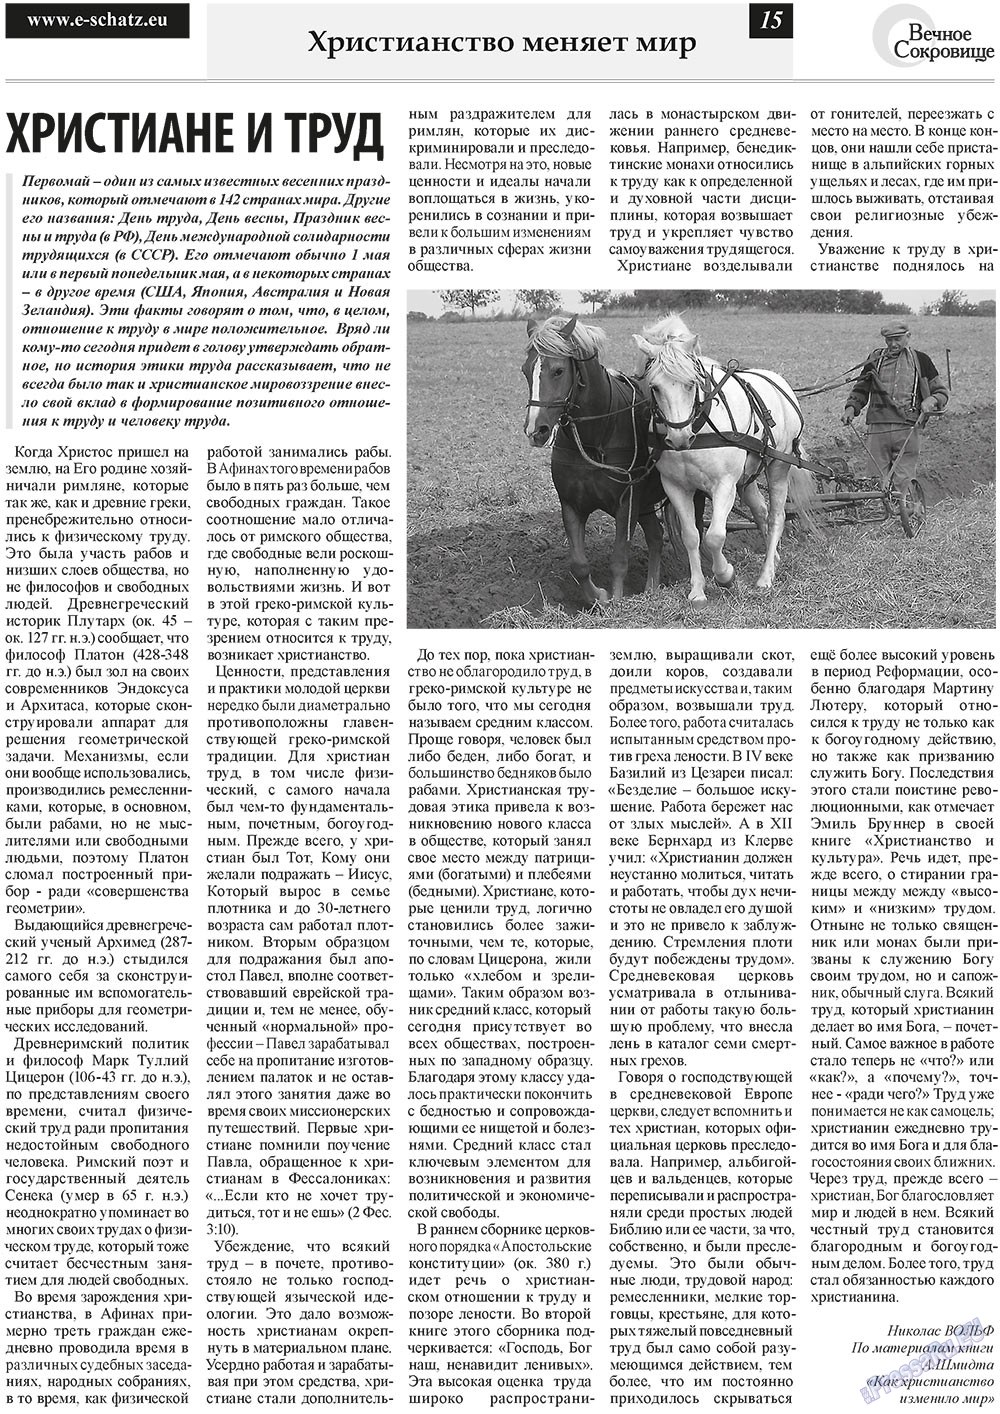 Вечное сокровище (газета). 2011 год, номер 2, стр. 15